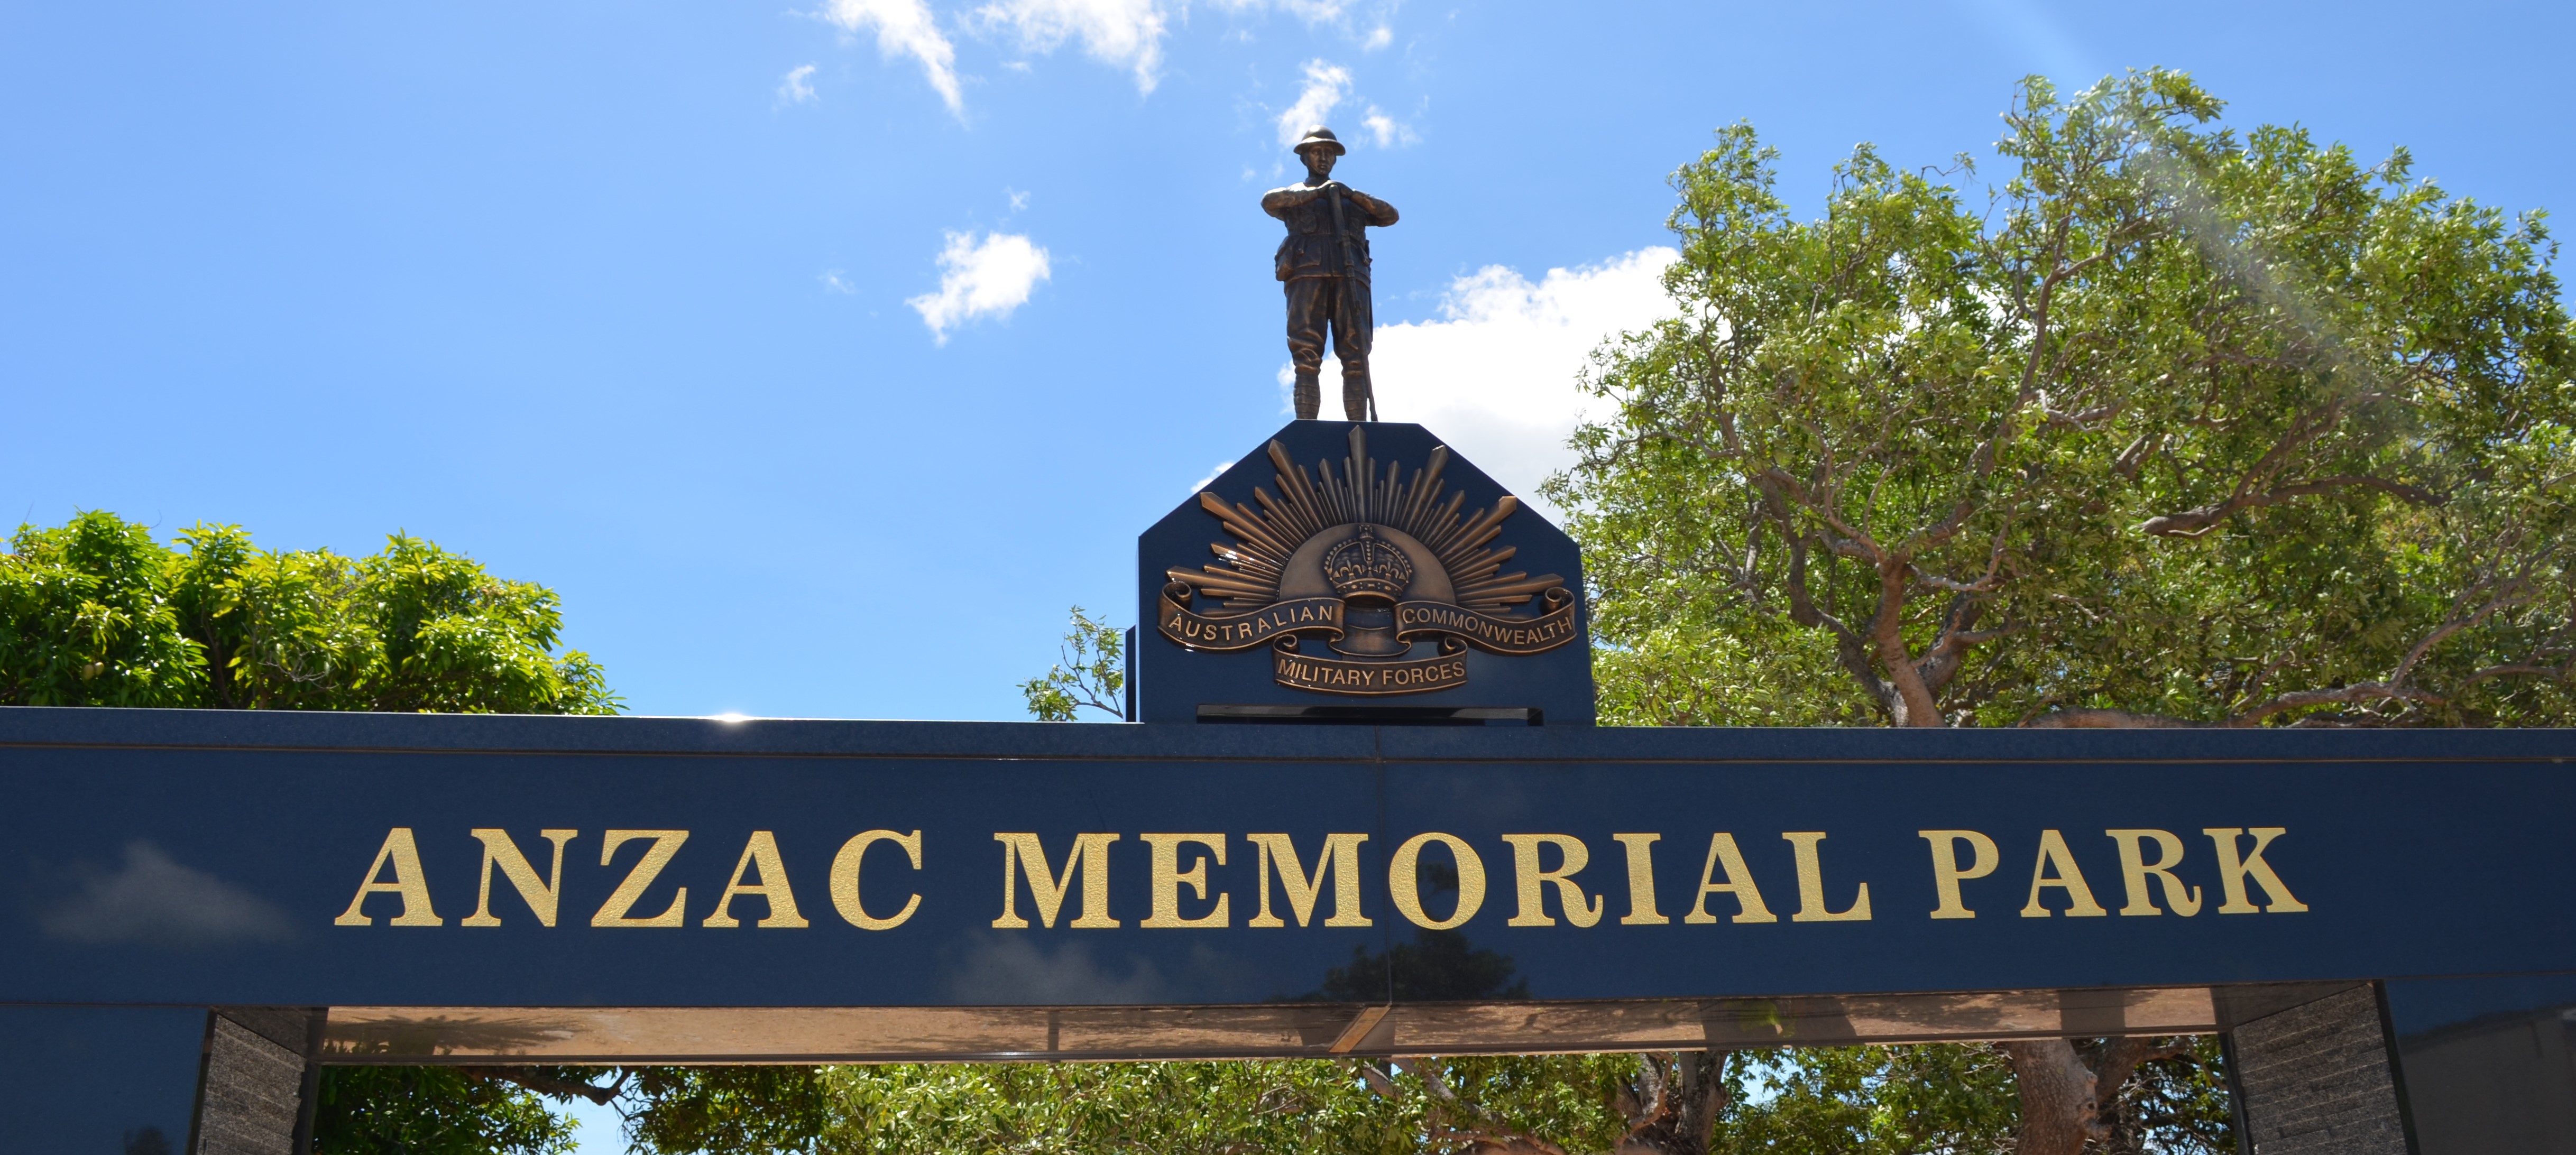 Anzac memorial park